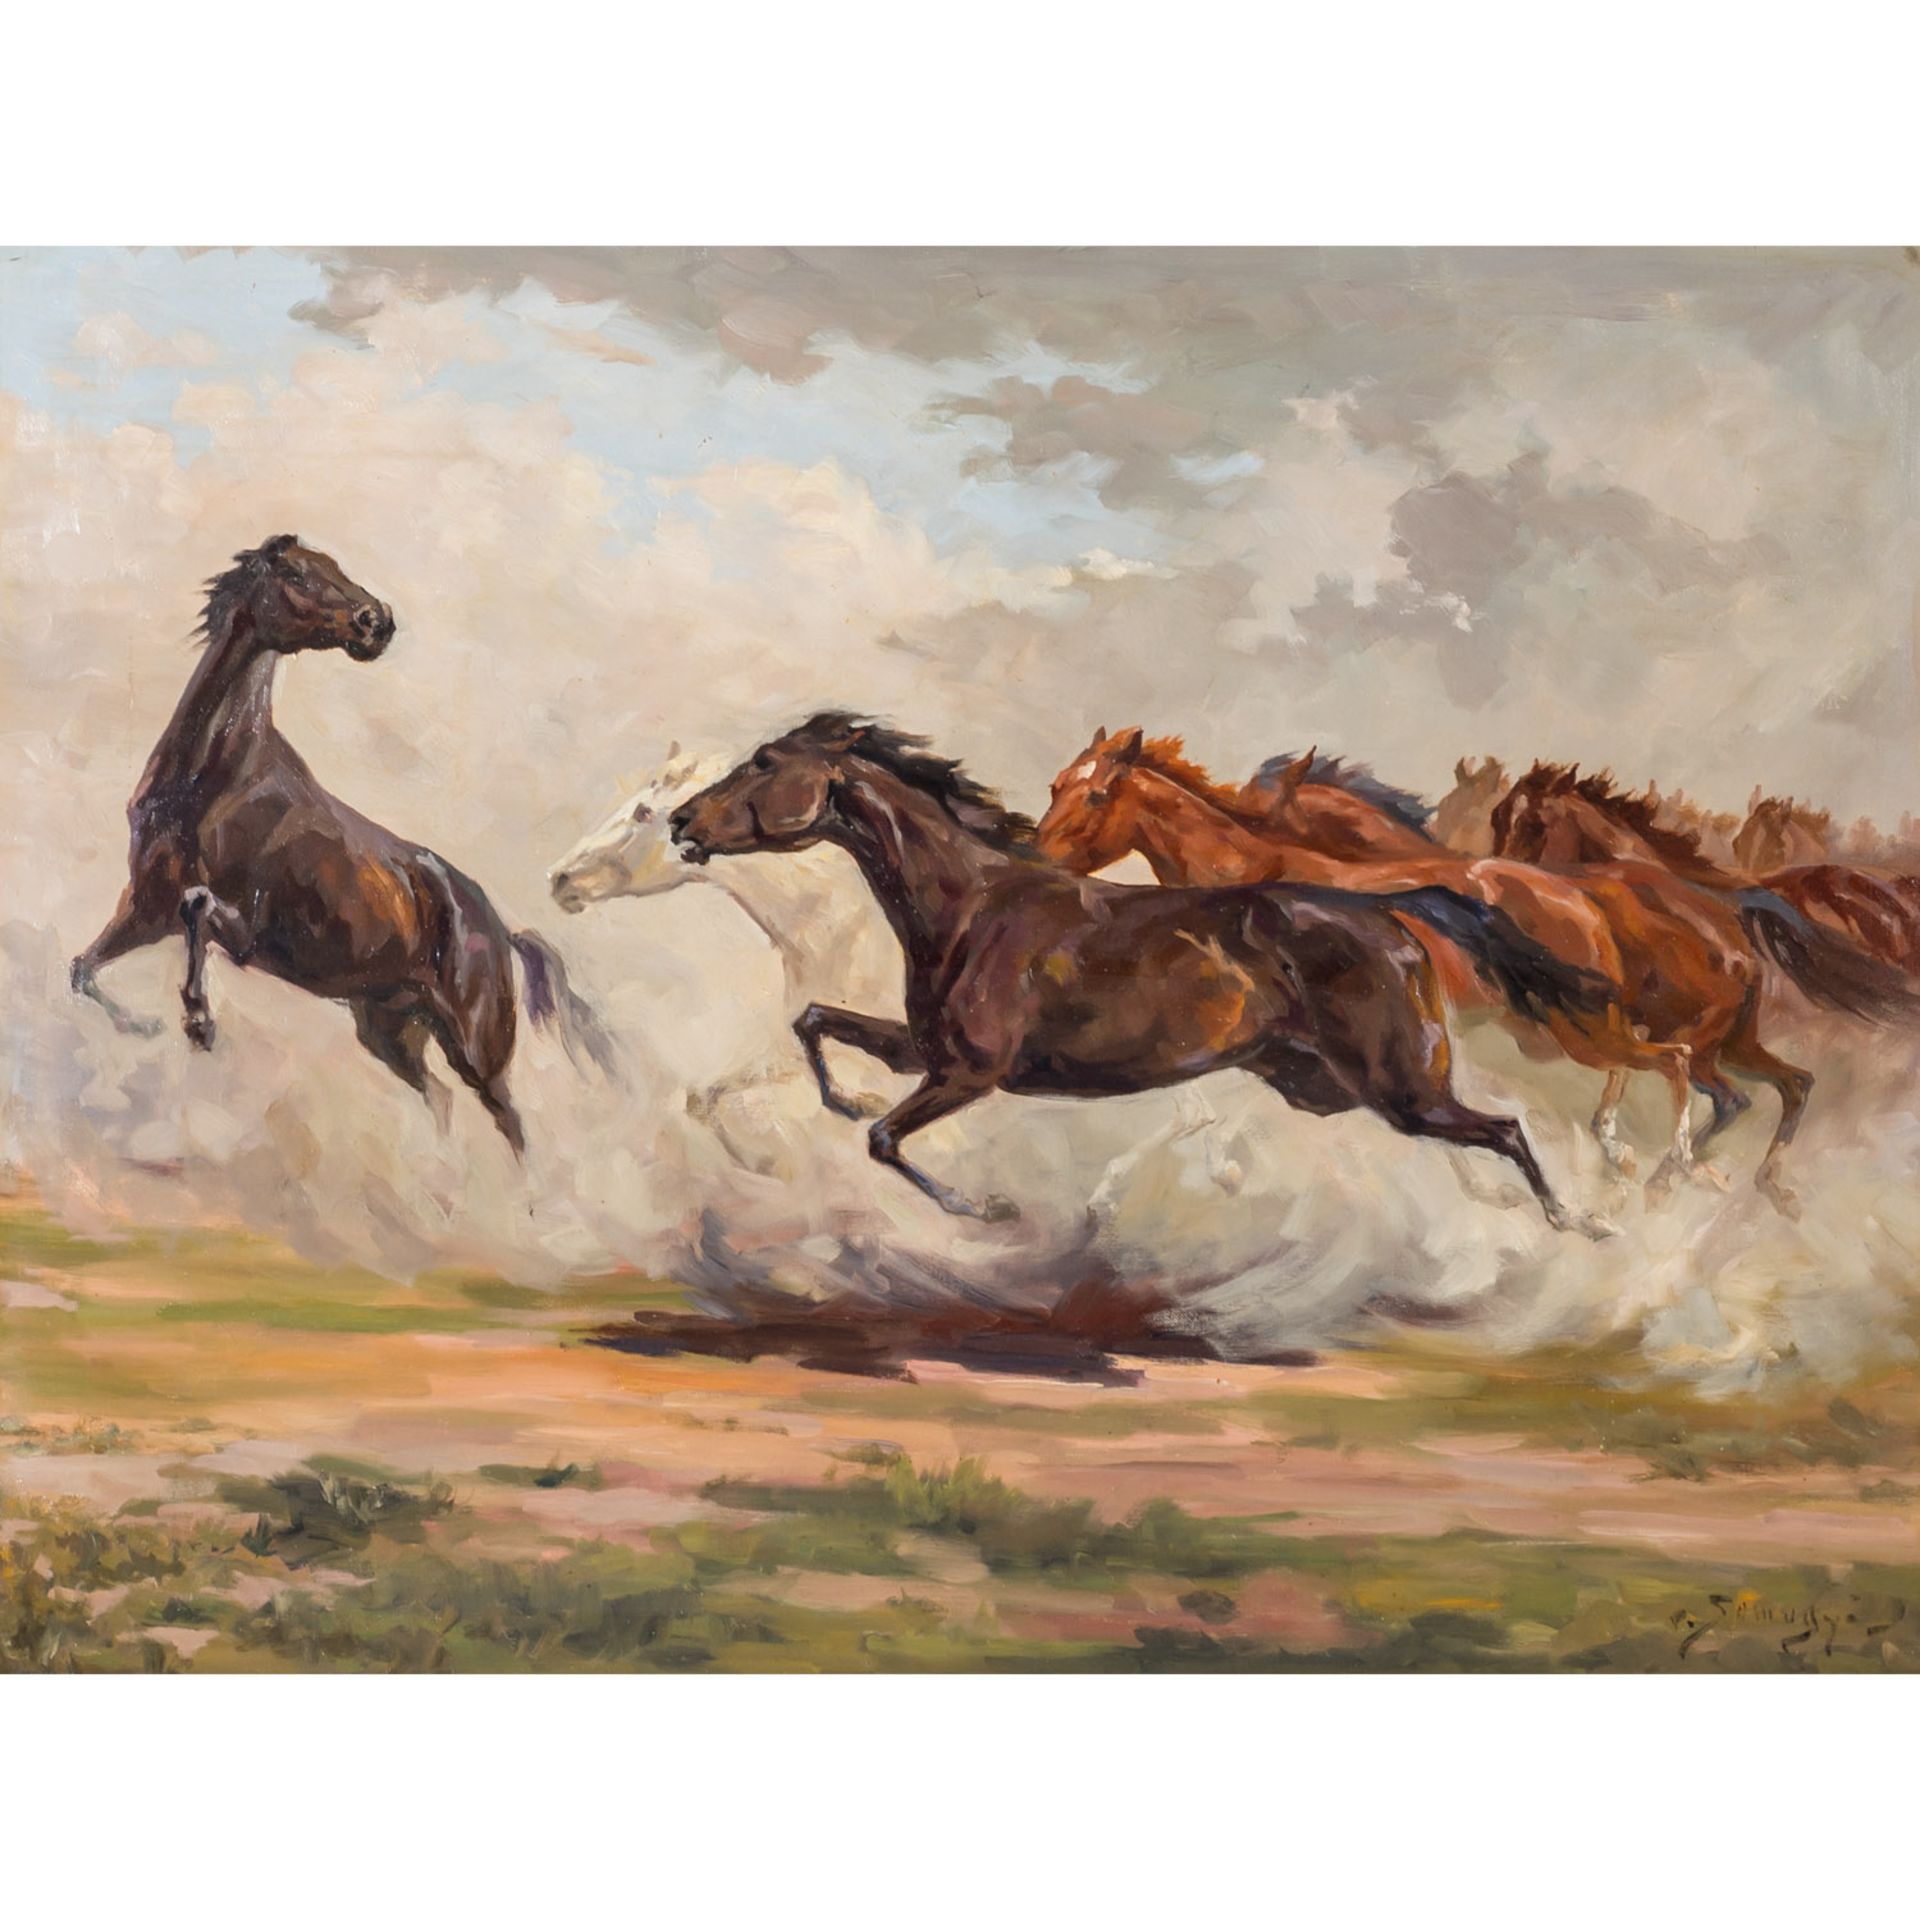 SOMOGYI, ISTVAN von (1897-1971), "Galoppierende Pferde in der Puszta",